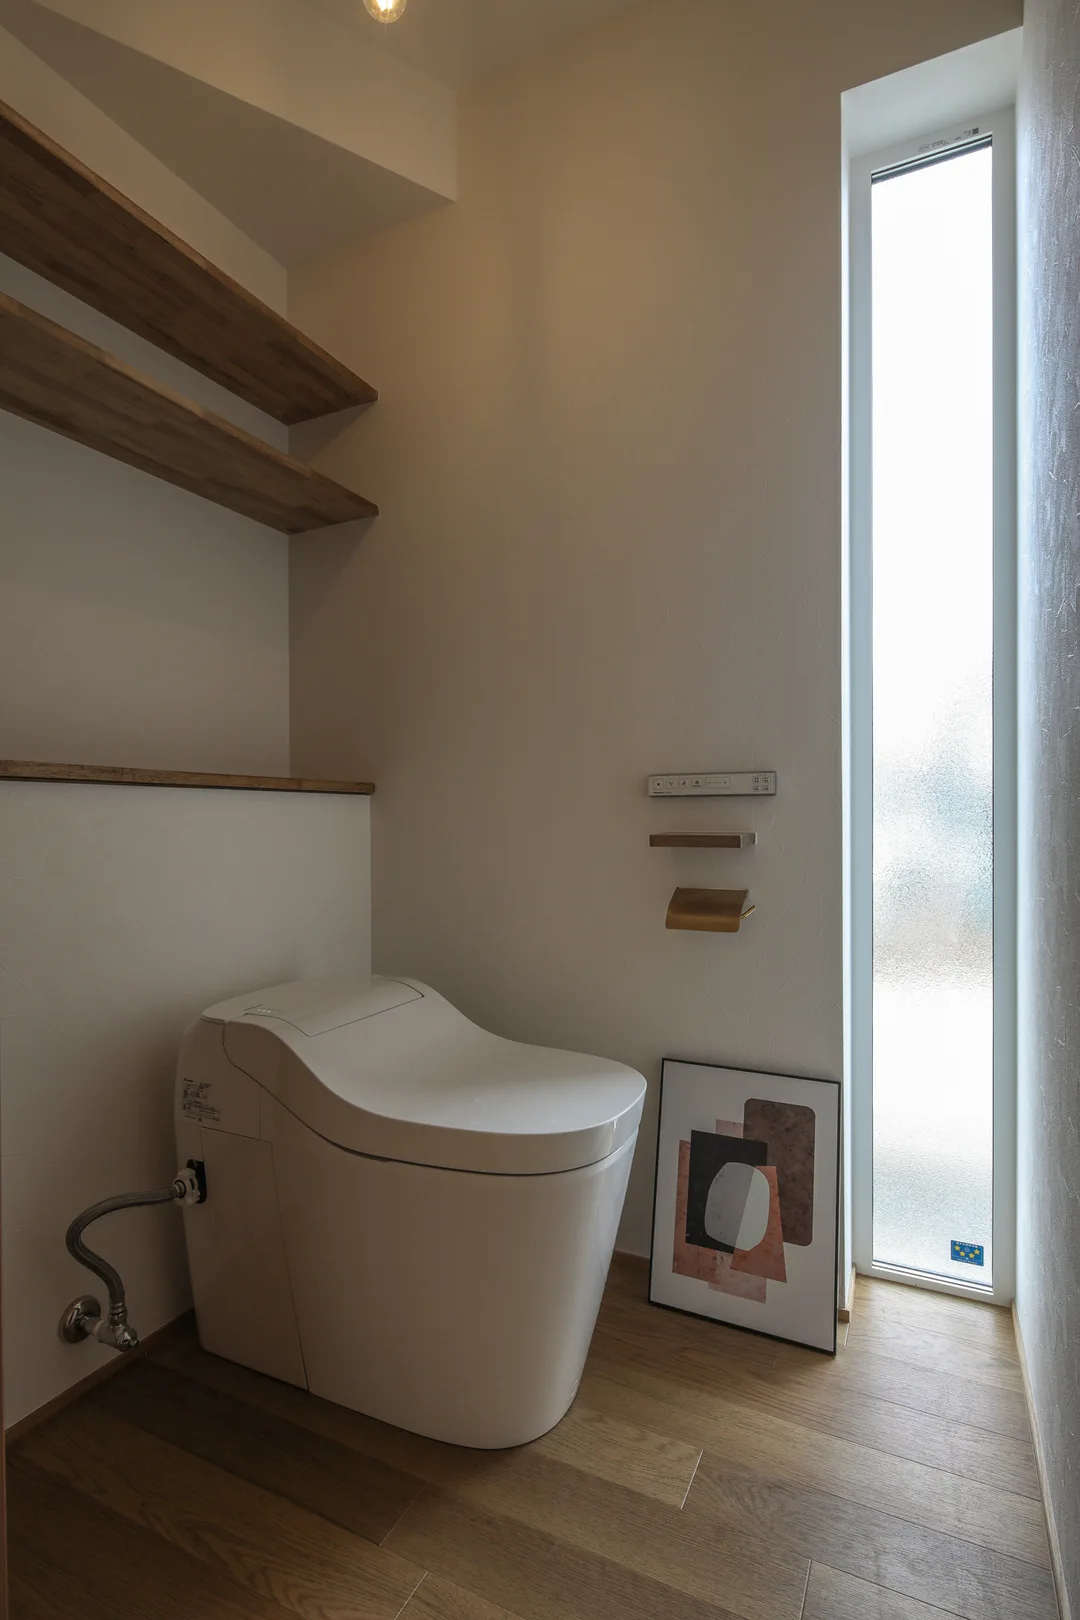 トイレ。右手奥には縦長窓。床は木目調の硬質塩ビタイル。トイレの背面上部に2枚の棚板